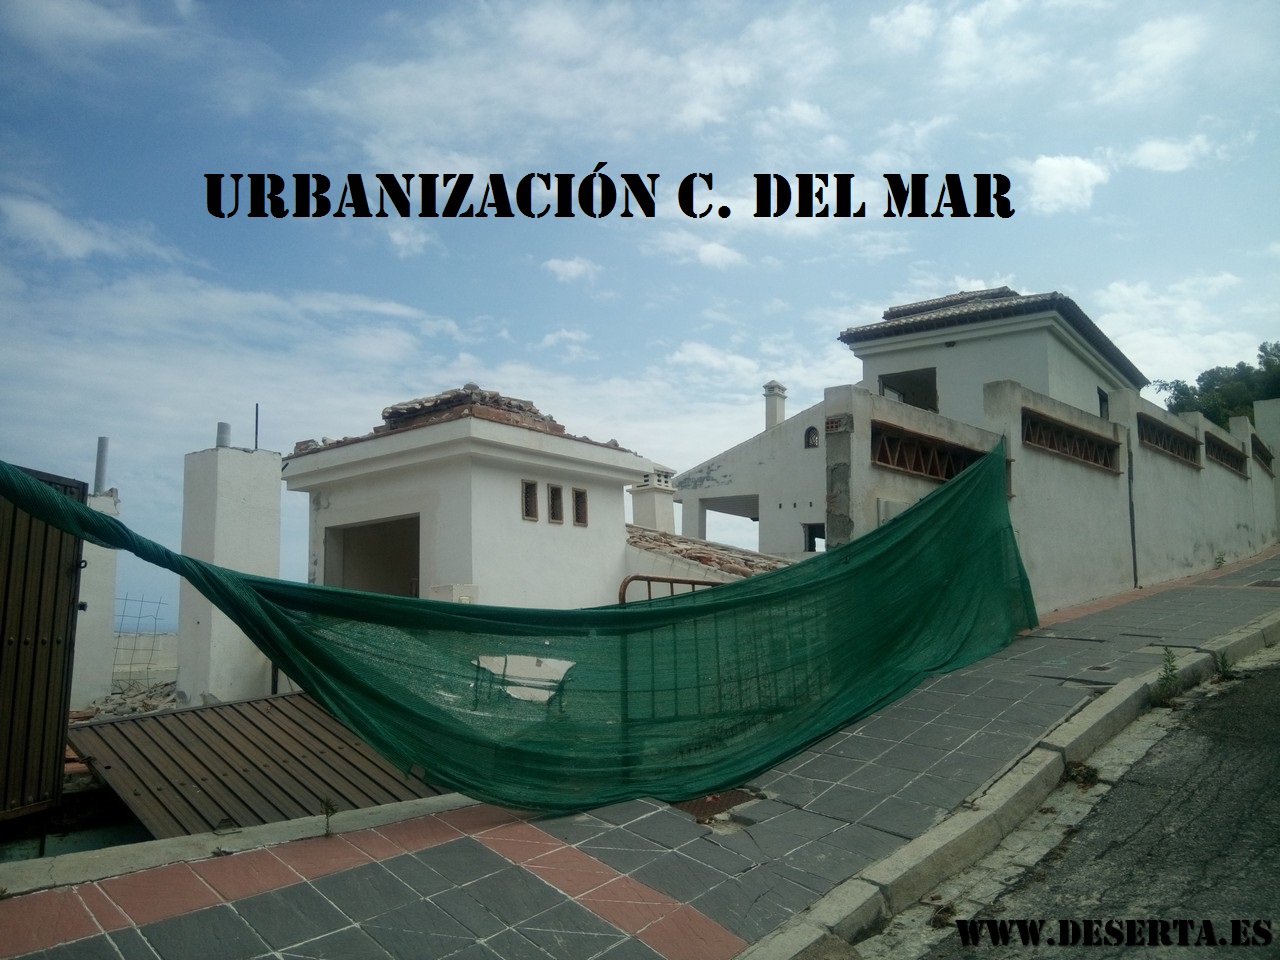 Urbanización C. del Mar